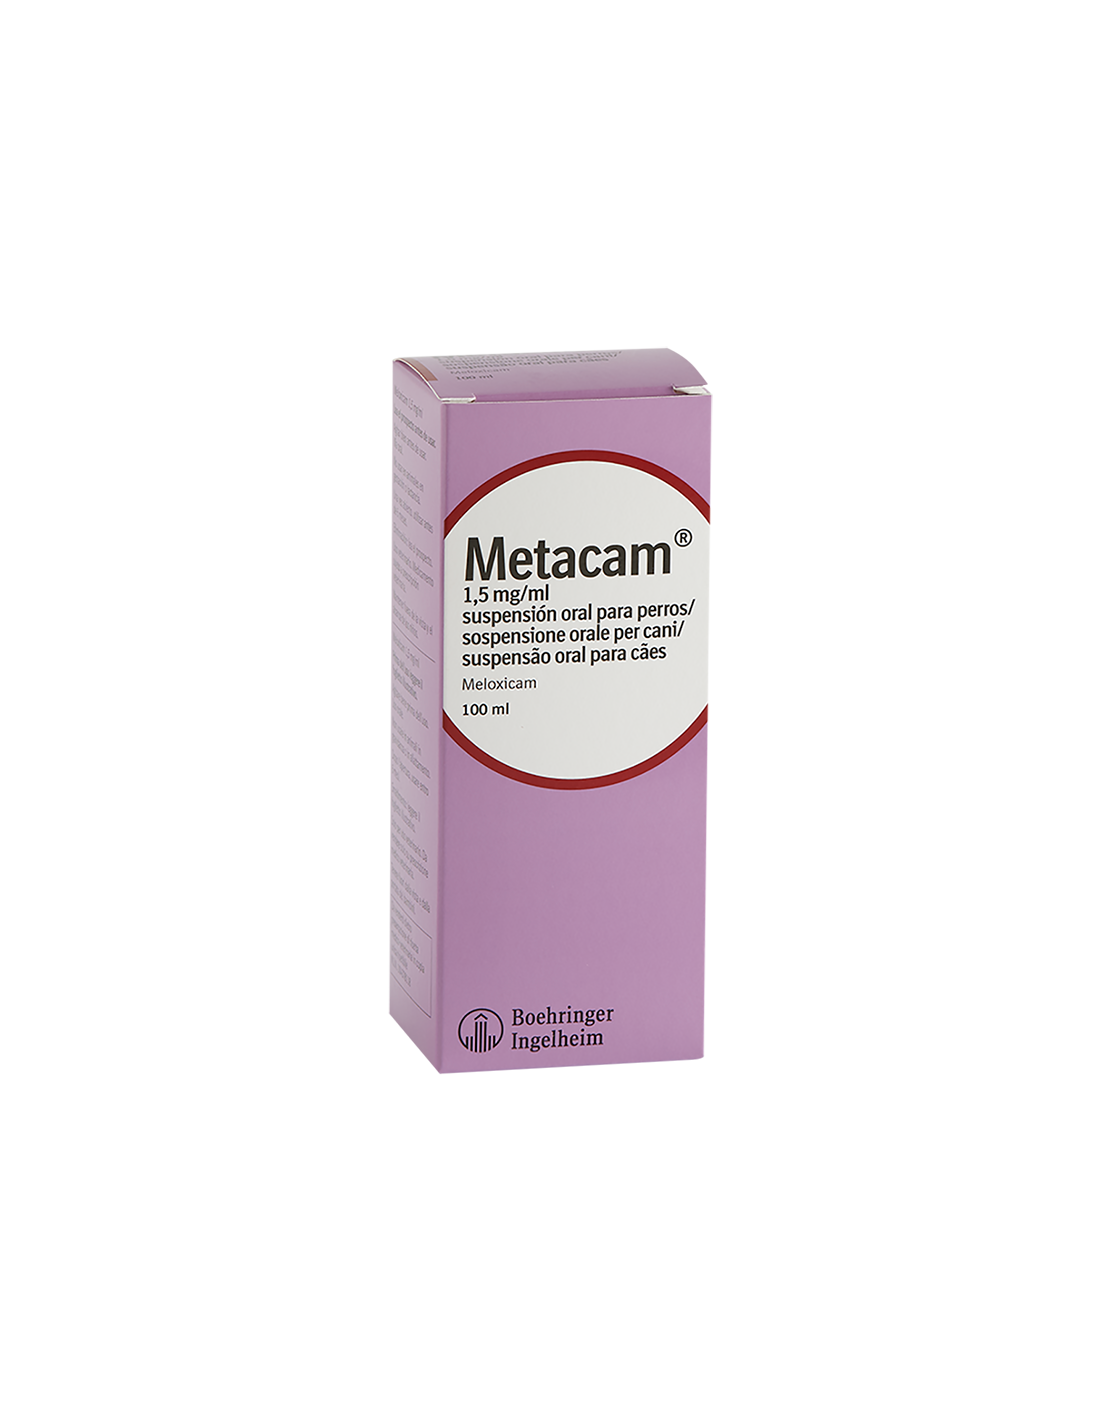 METACAM 1,5 mg/ml SUSPENSION ORAL de BOEHRINGER INGELHEIM